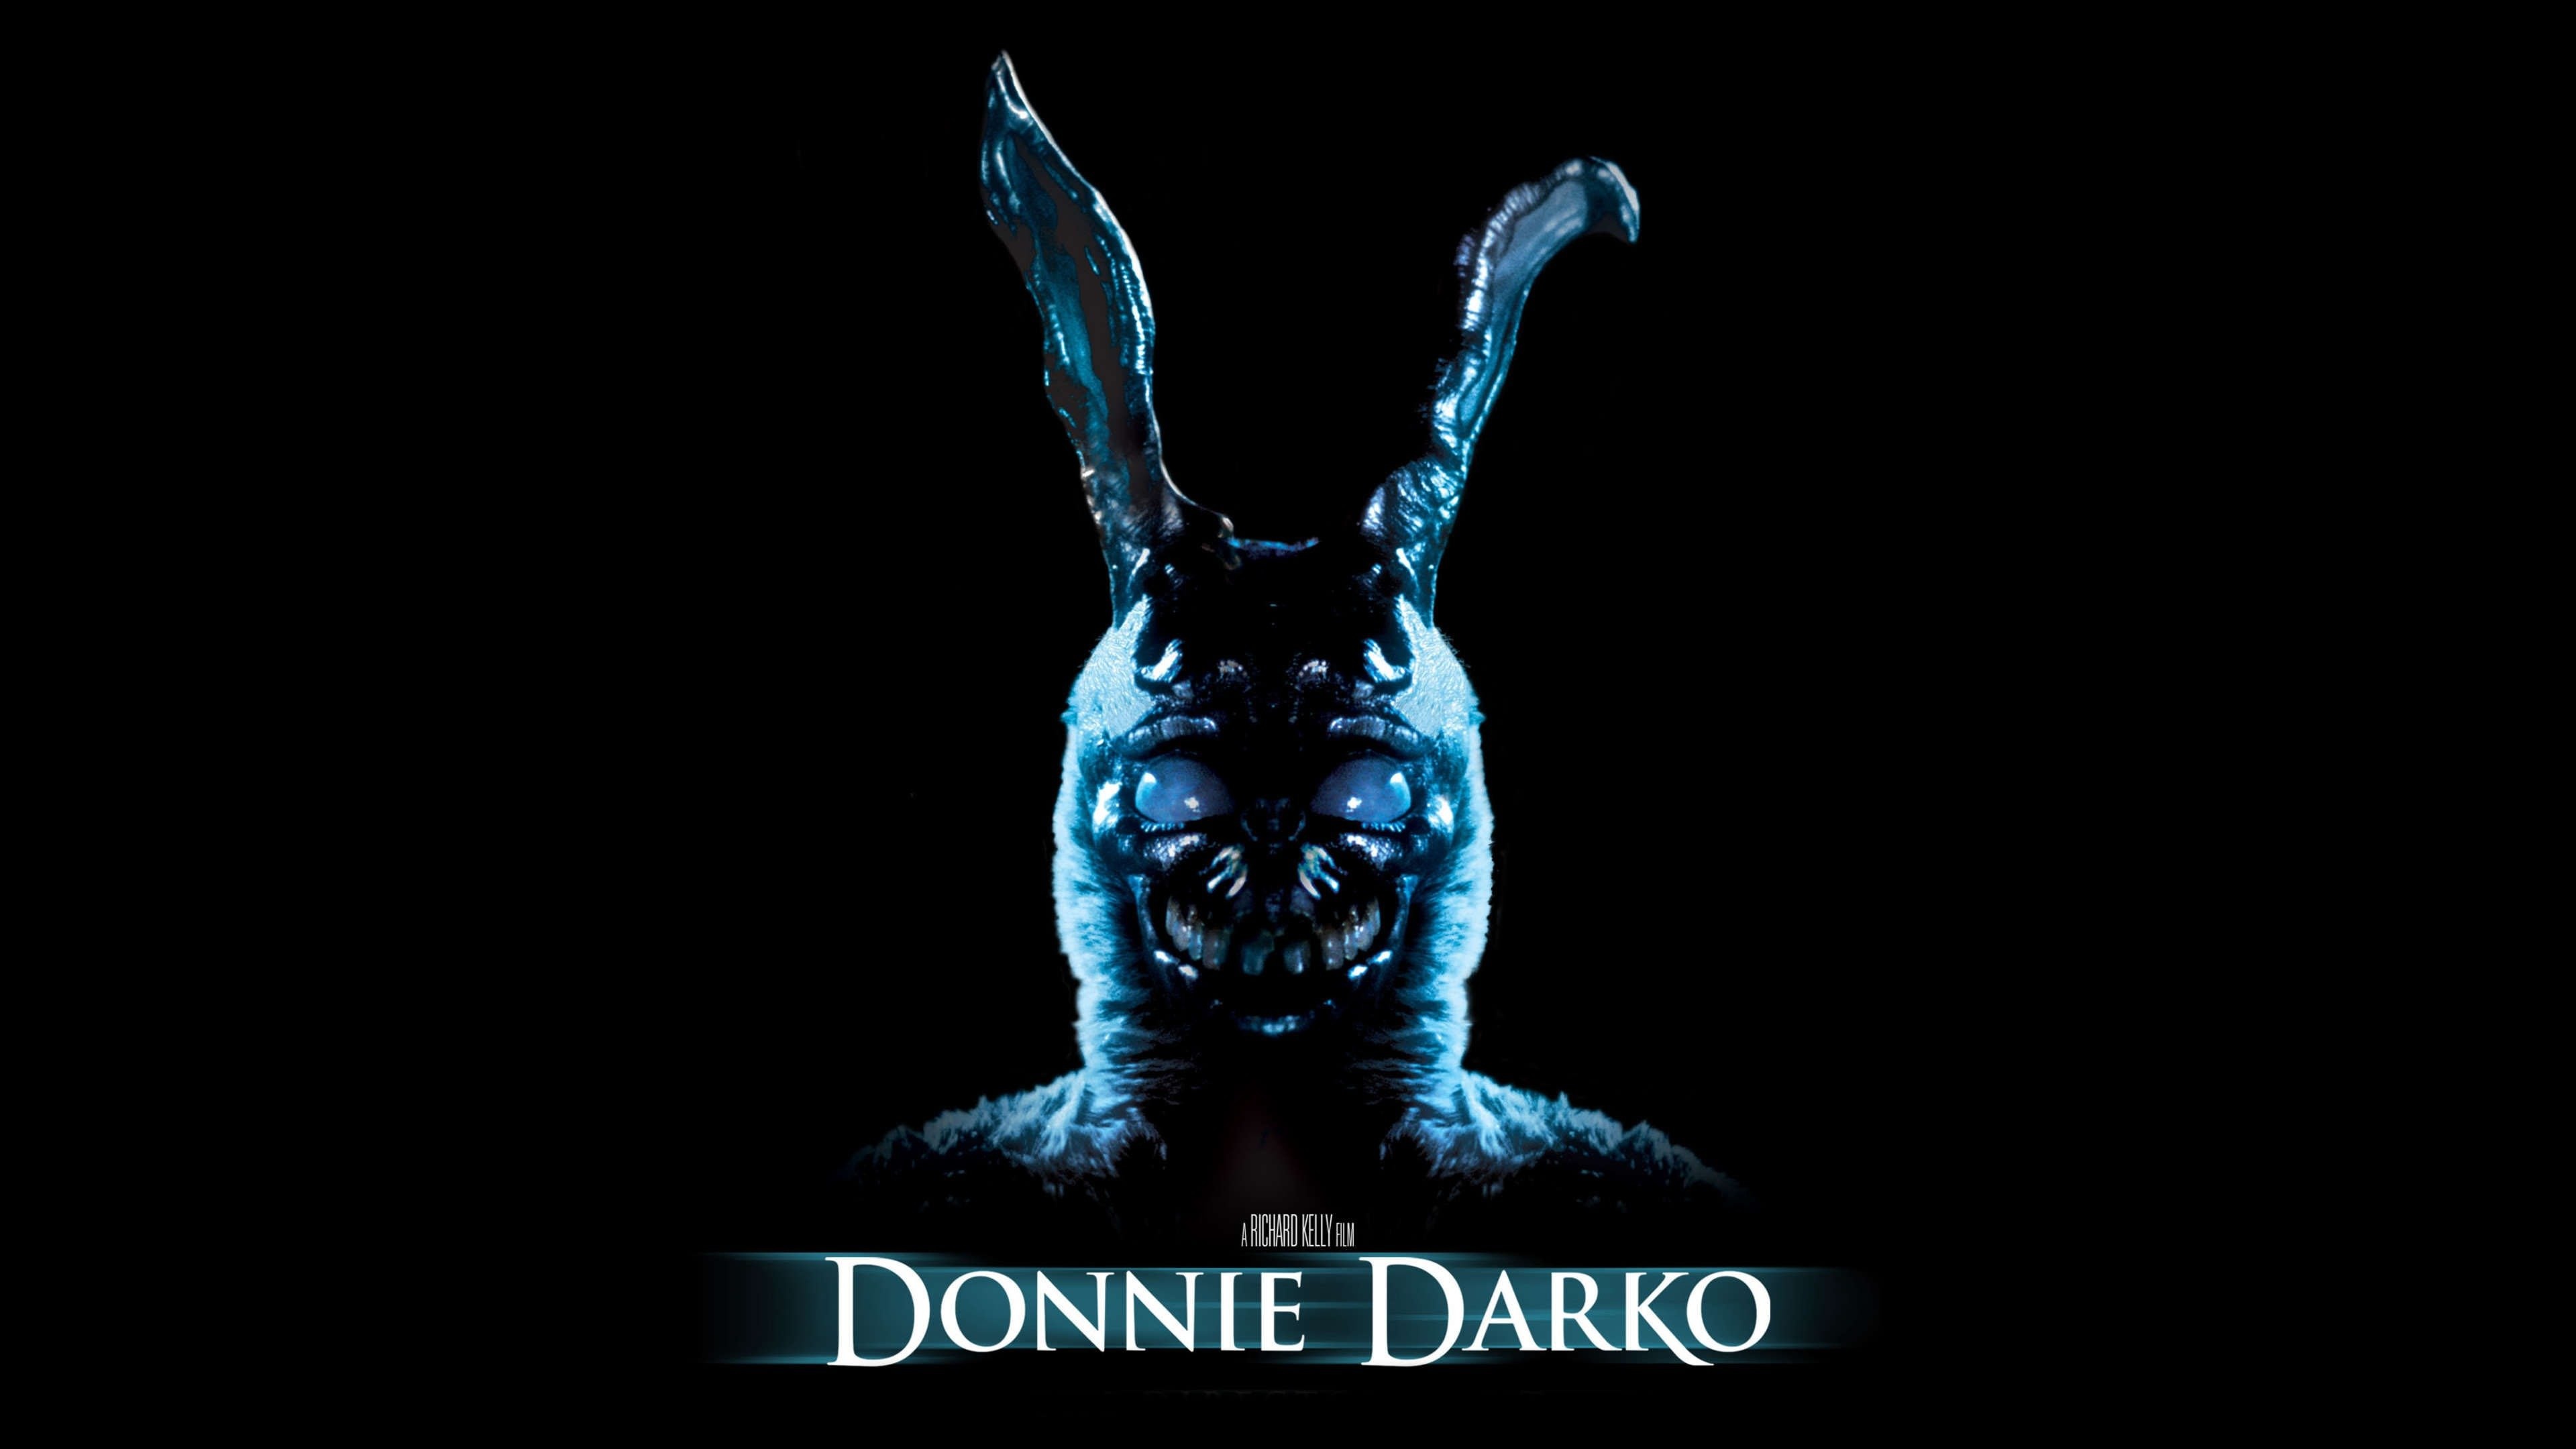 Richard Kelly, Donnie Darko, Watch full movie, Online, 3840x2160 4K Desktop